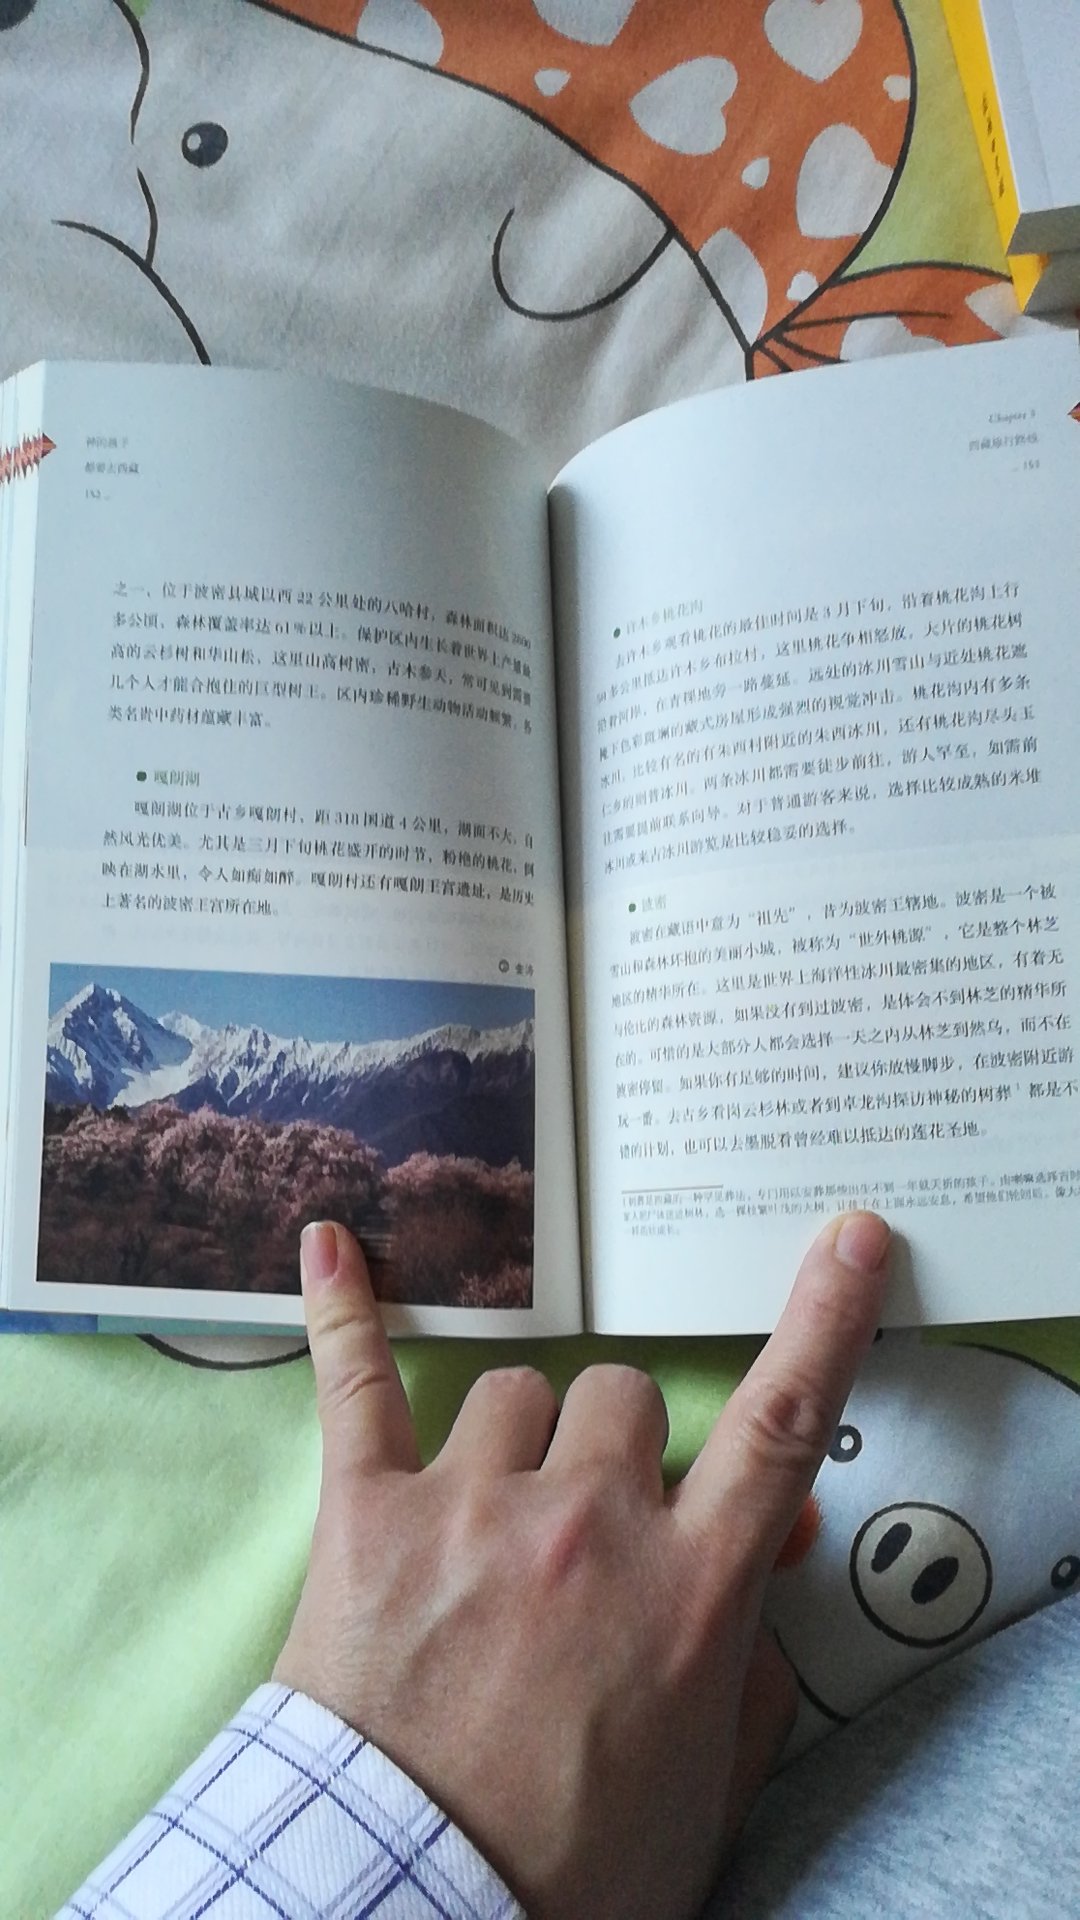 西藏旅行完全手册！介绍的特别详细全面！虽然我算是去过一次西藏了，买本书再详细了解一下，为下次出发再做好功课！书的品相完好！读书真是一件很美好的事情！感谢，活动购书是读书人的幸事！